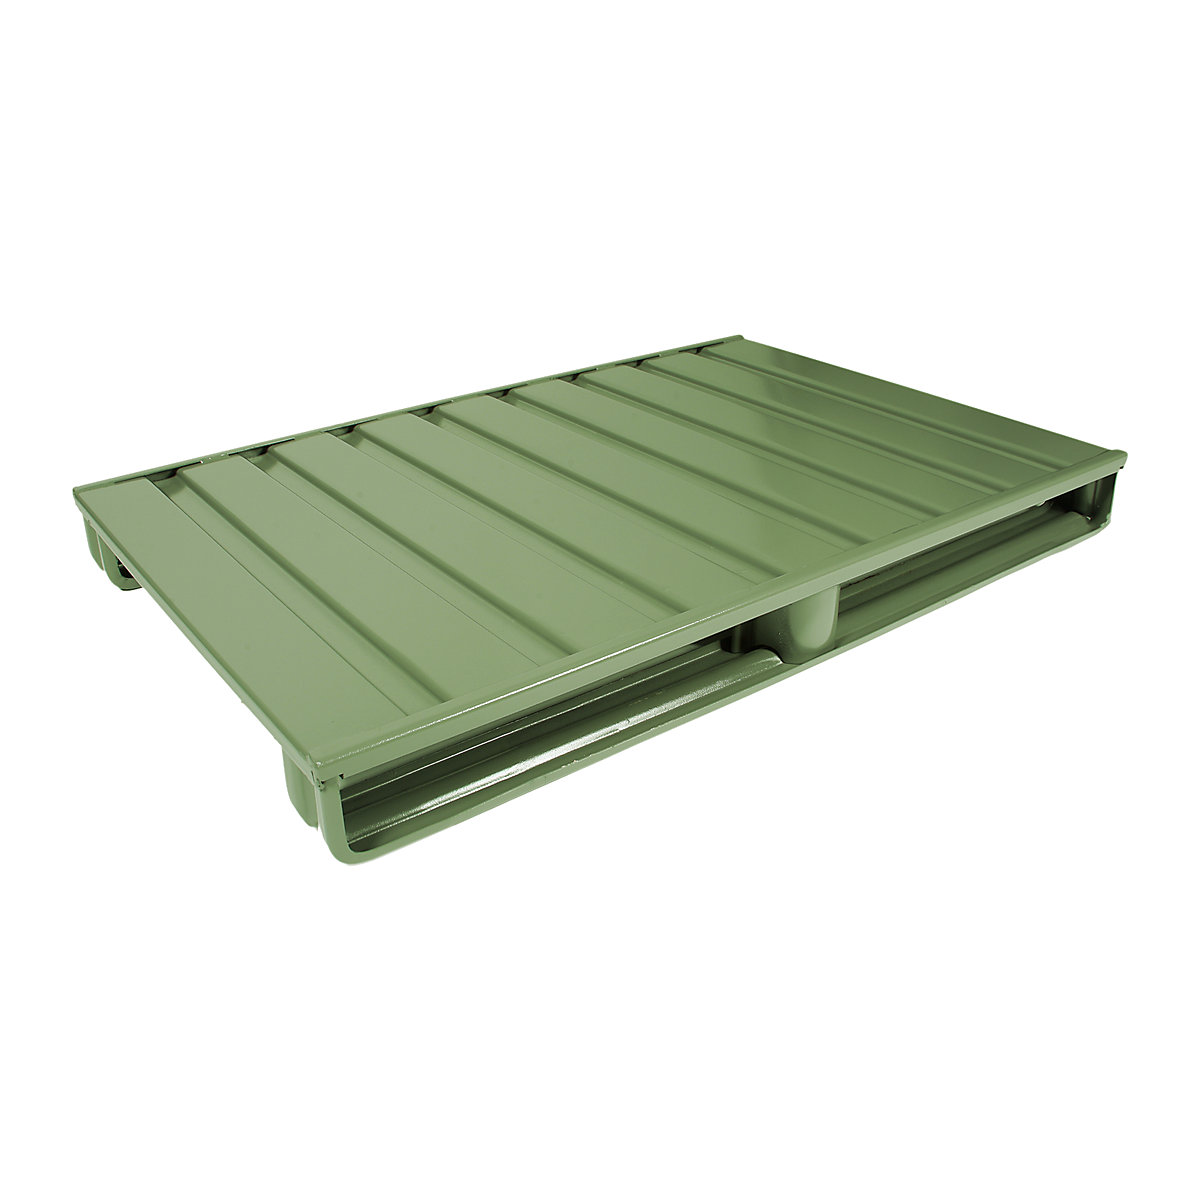 Palete plana de aço – Heson, CxL 1200 x 1000 mm, capacidade de carga 1500 kg, verde reseda-5